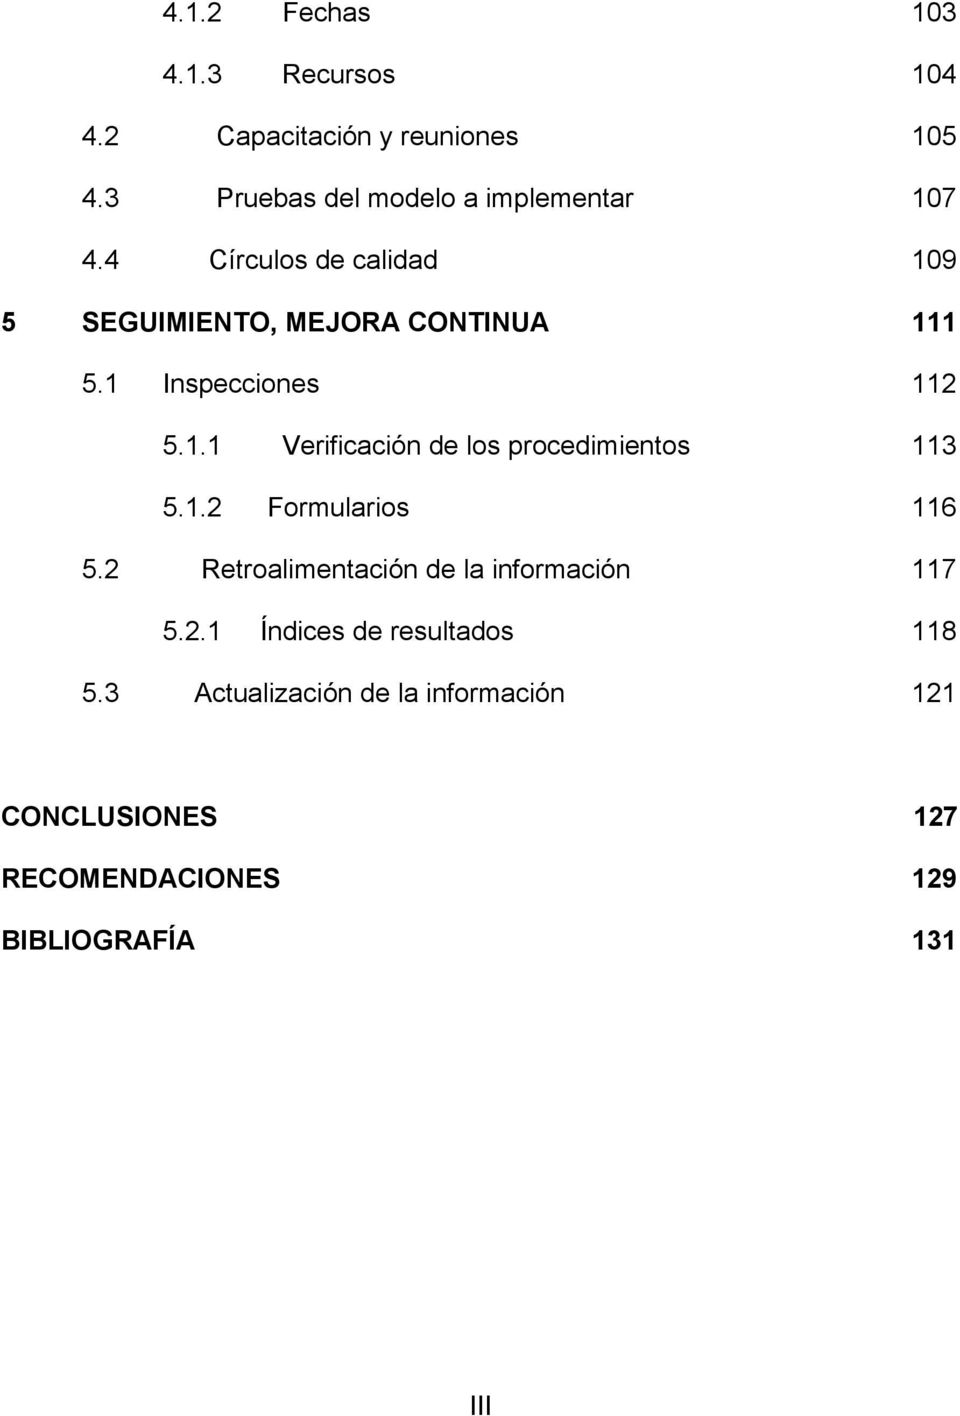 1 Inspecciones 112 5.1.1 Verificación de los procedimientos 113 5.1.2 Formularios 116 5.